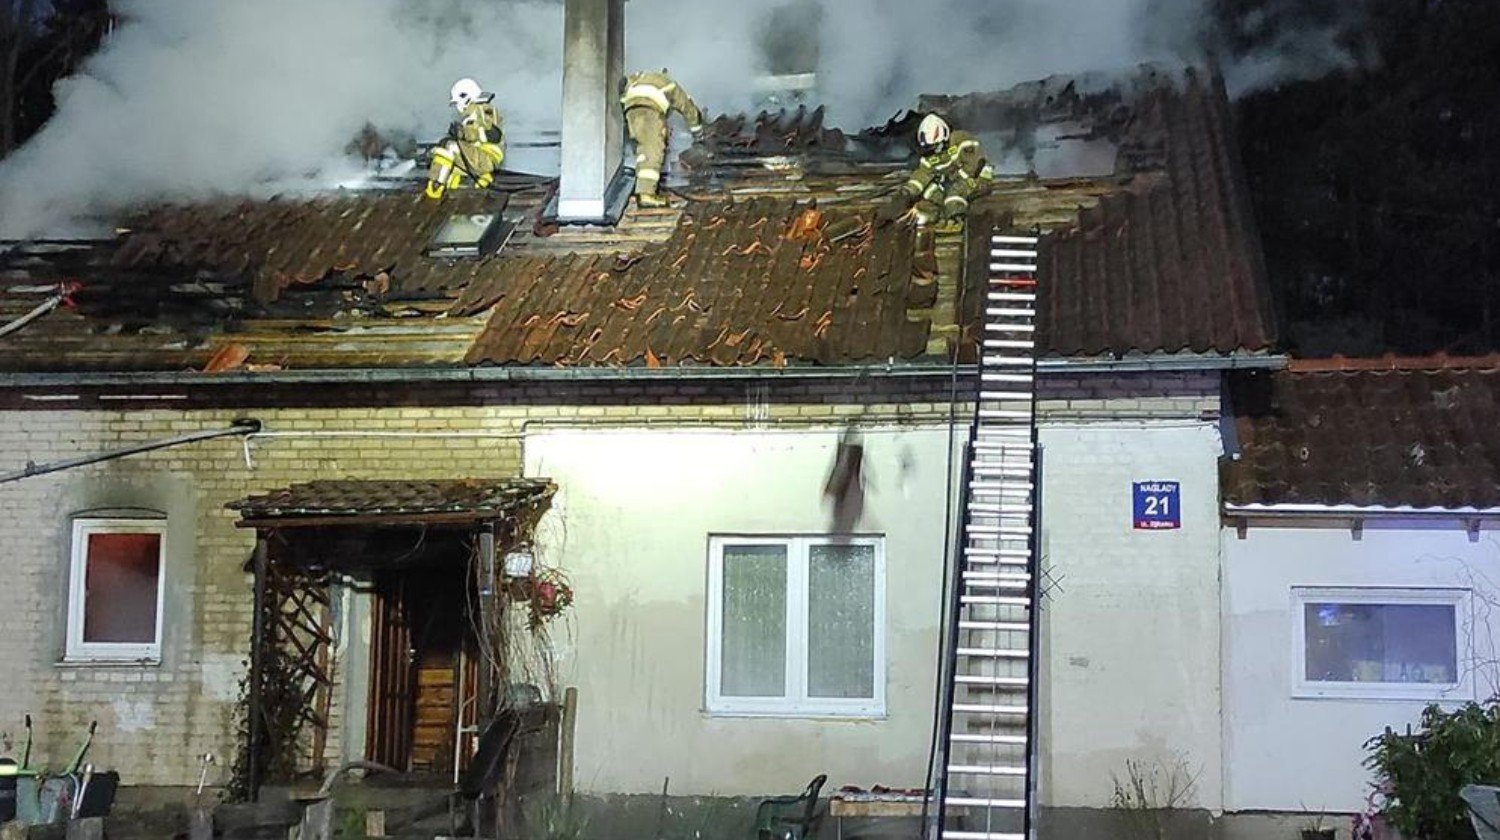 Ruszyła zrzutka dla poszkodowanych w pożarze pożar Olsztyn, Wiadomości